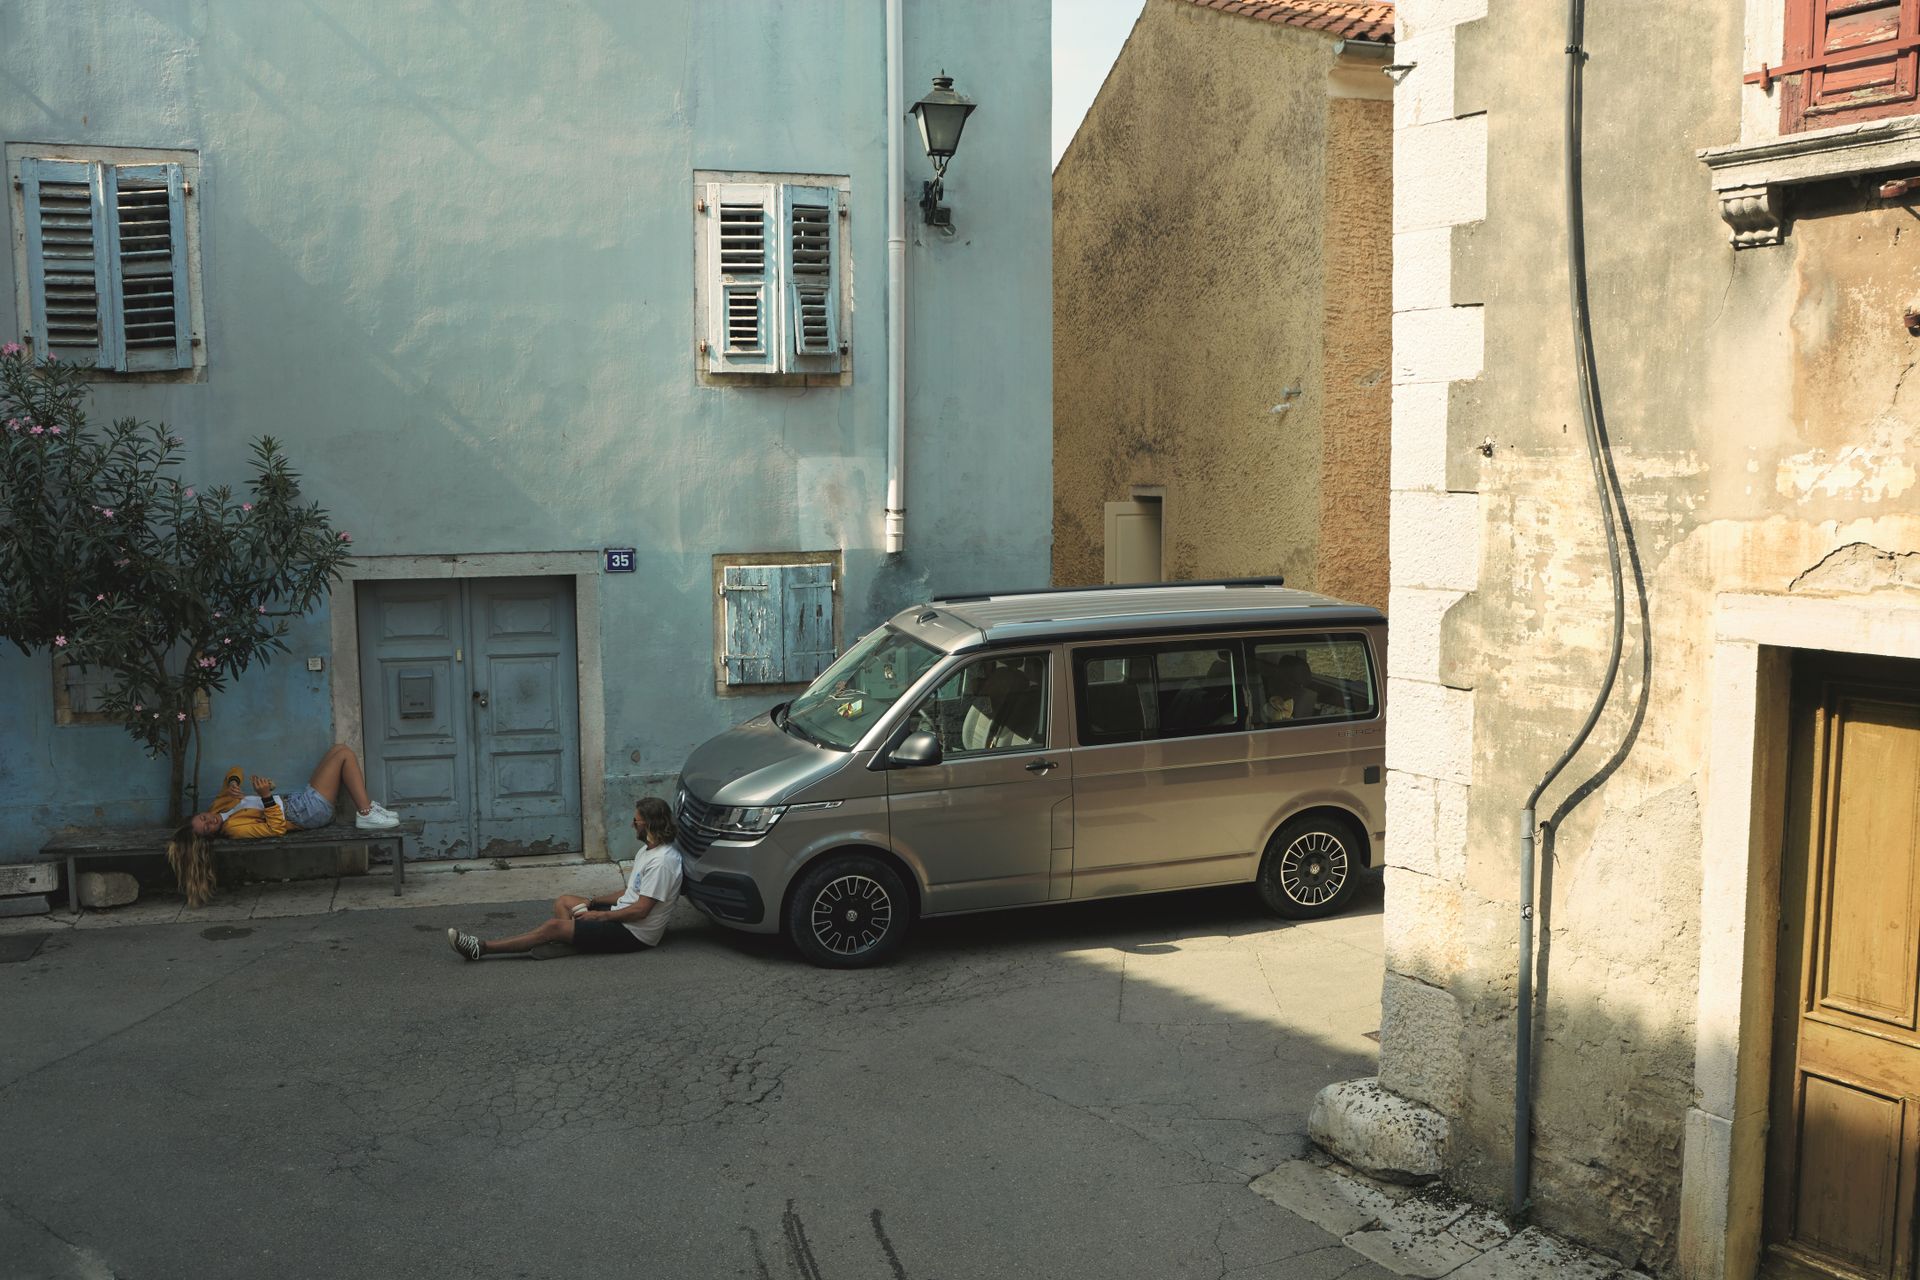 VW Camper in einer engen, leeren Gasse mit Häusern südländischen Touchs